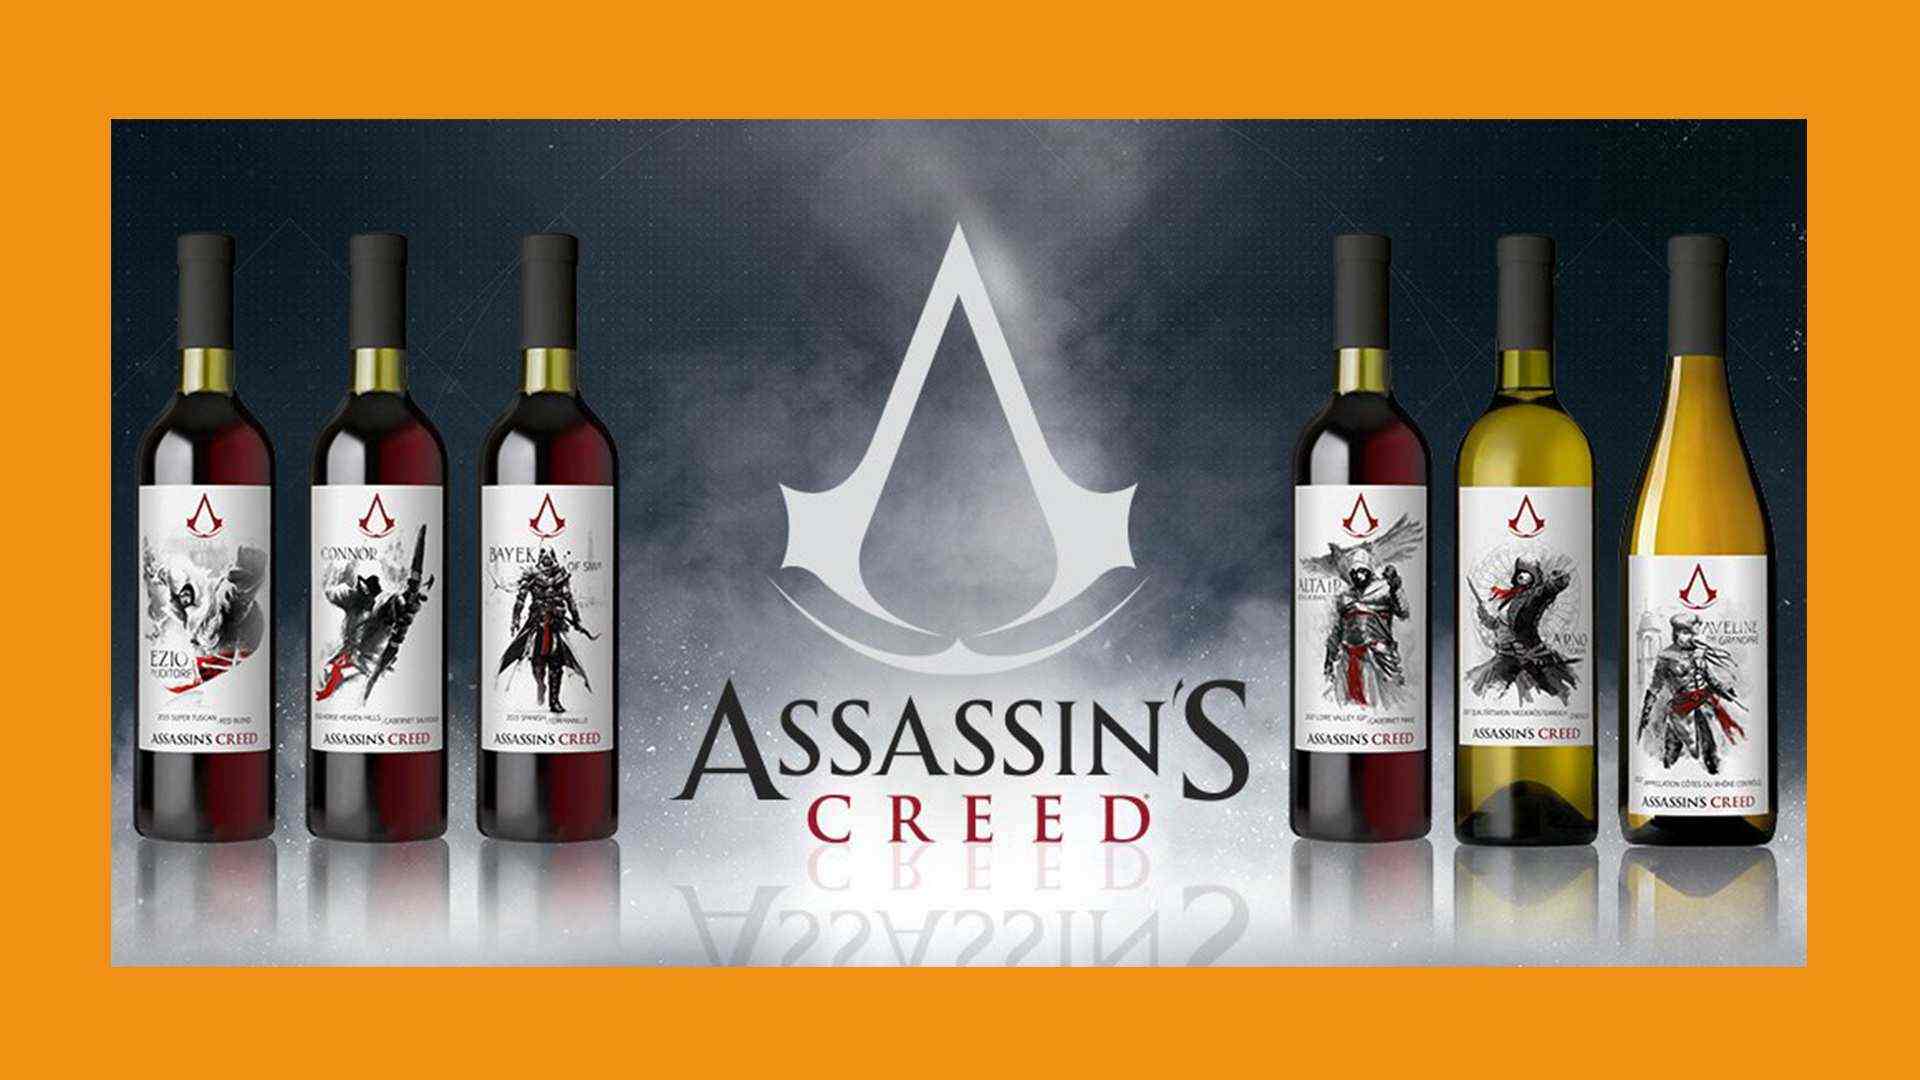 Assassin's Creed bekommt eigene Wein-Kolletion